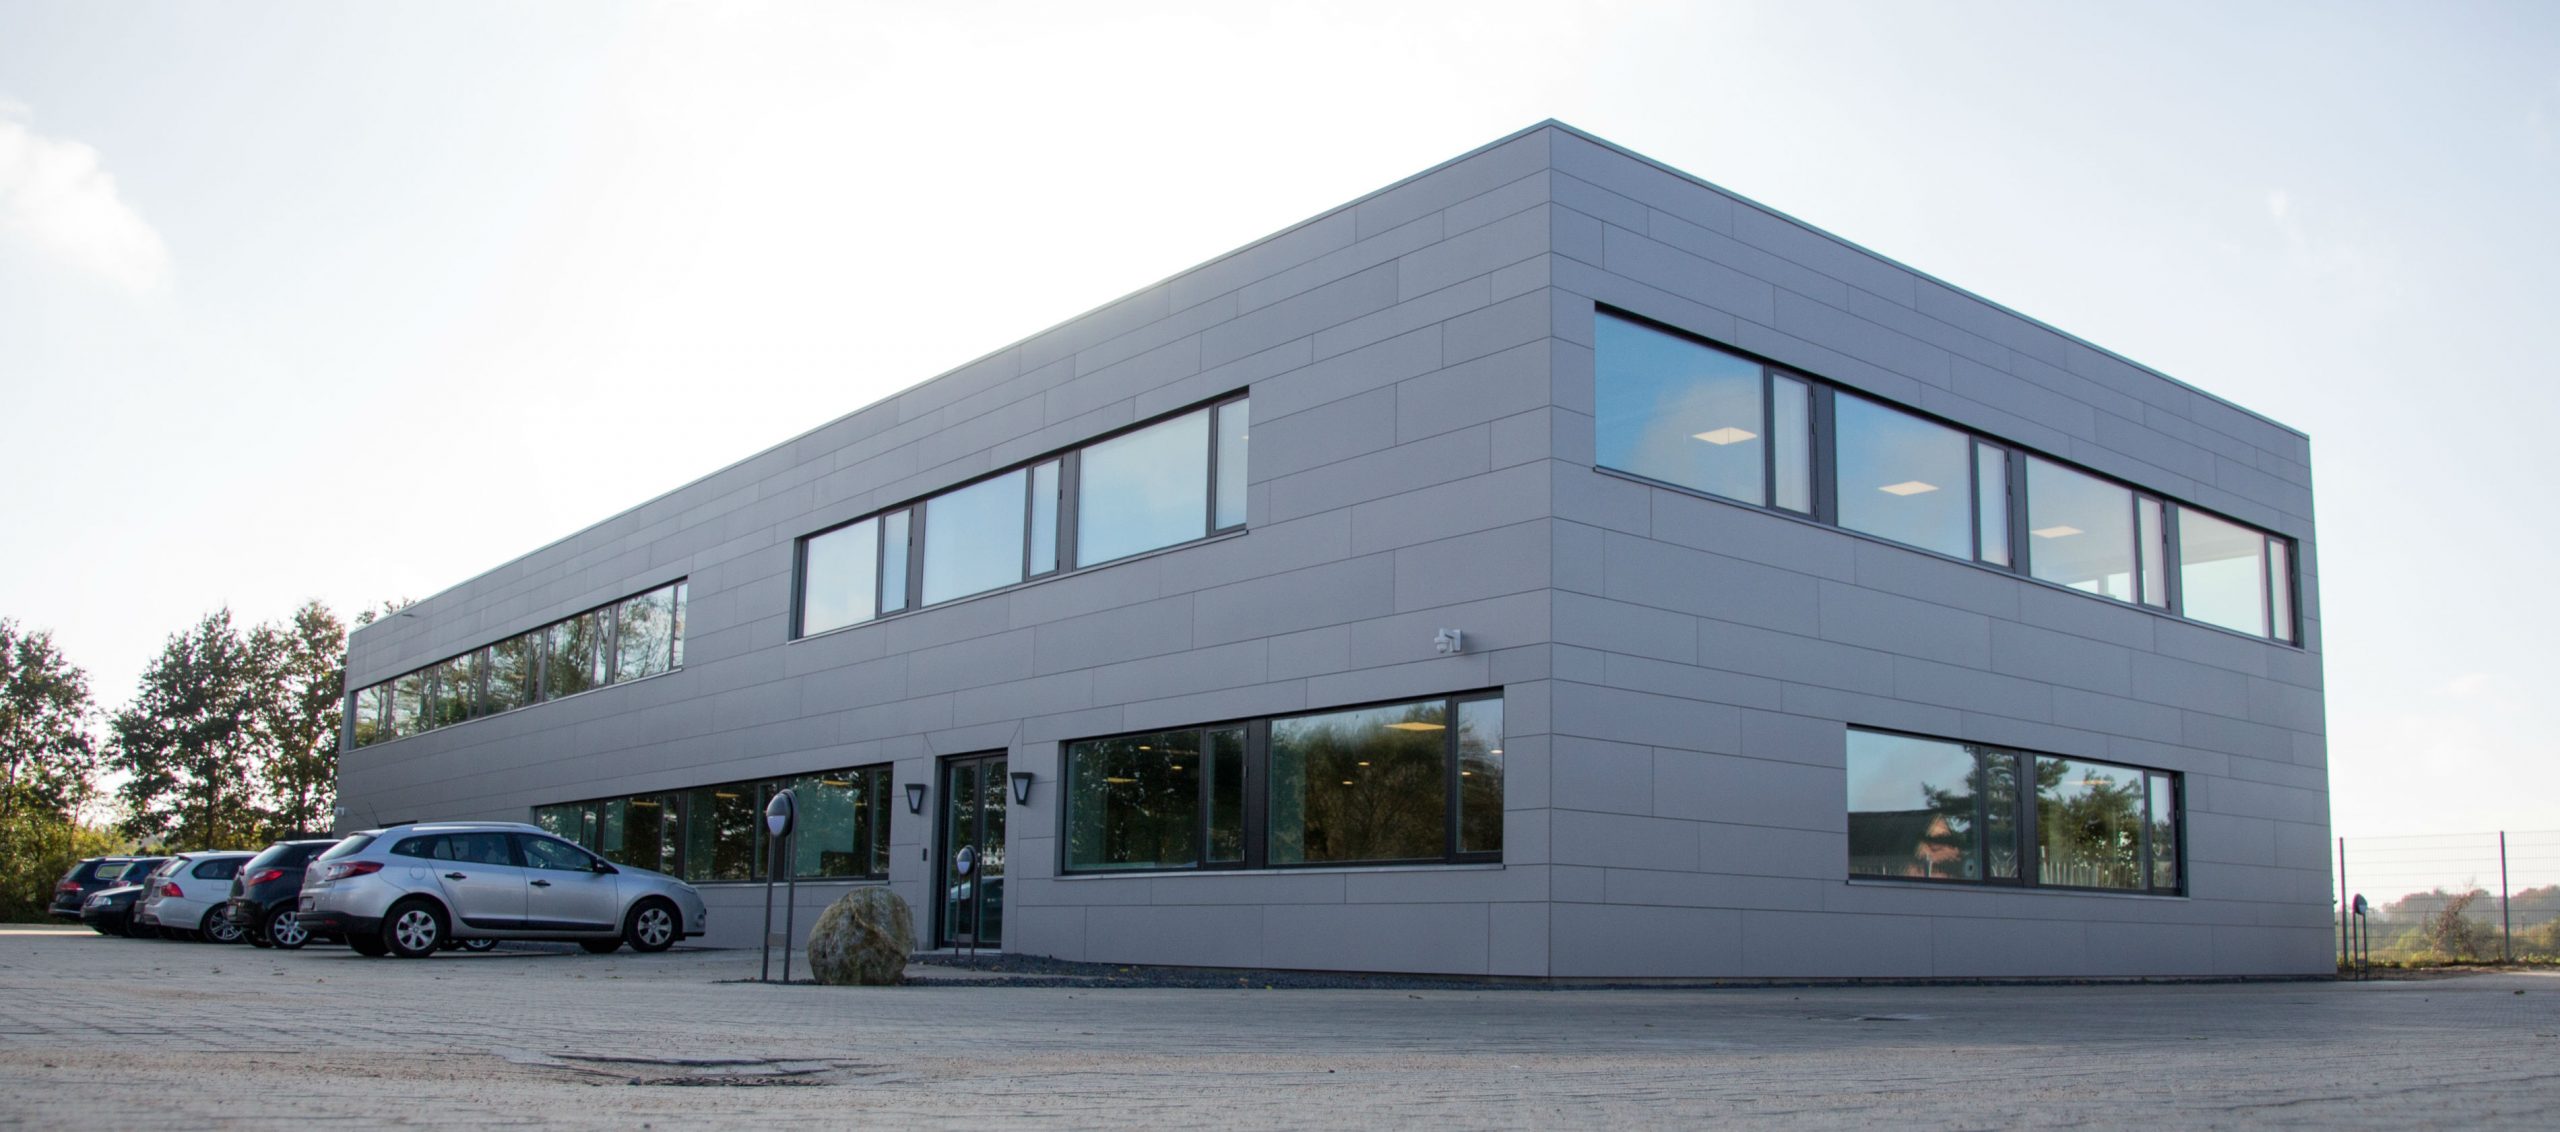 Insatech har hovedkvarter i Bårse, hvor forholdene for industrivirksomheden med nicheproduktion er i top